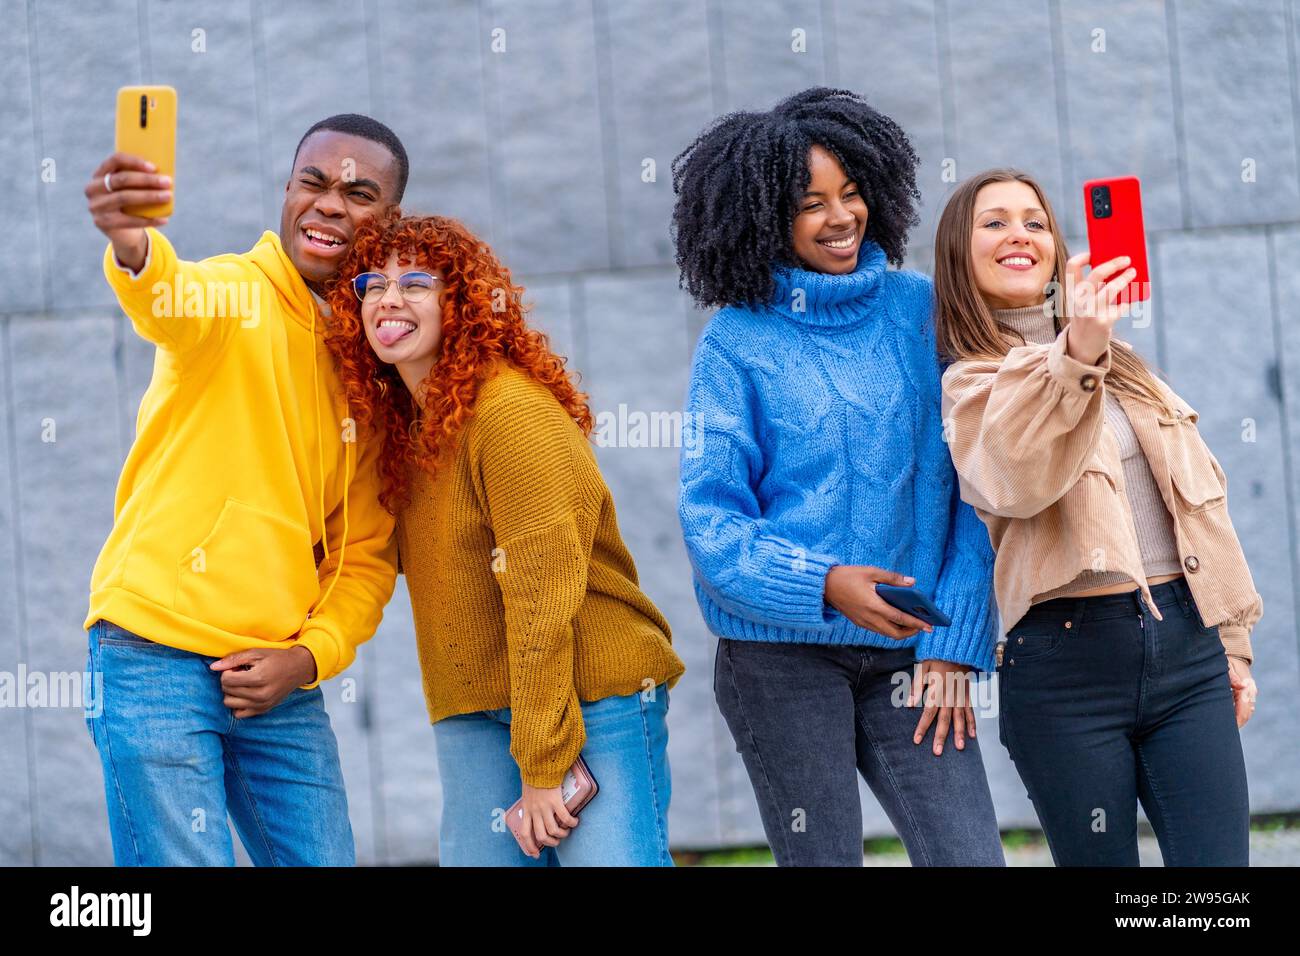 Multiethnische Jugendliche, die Selfies machen, stehen in einem städtischen Raum Stockfoto